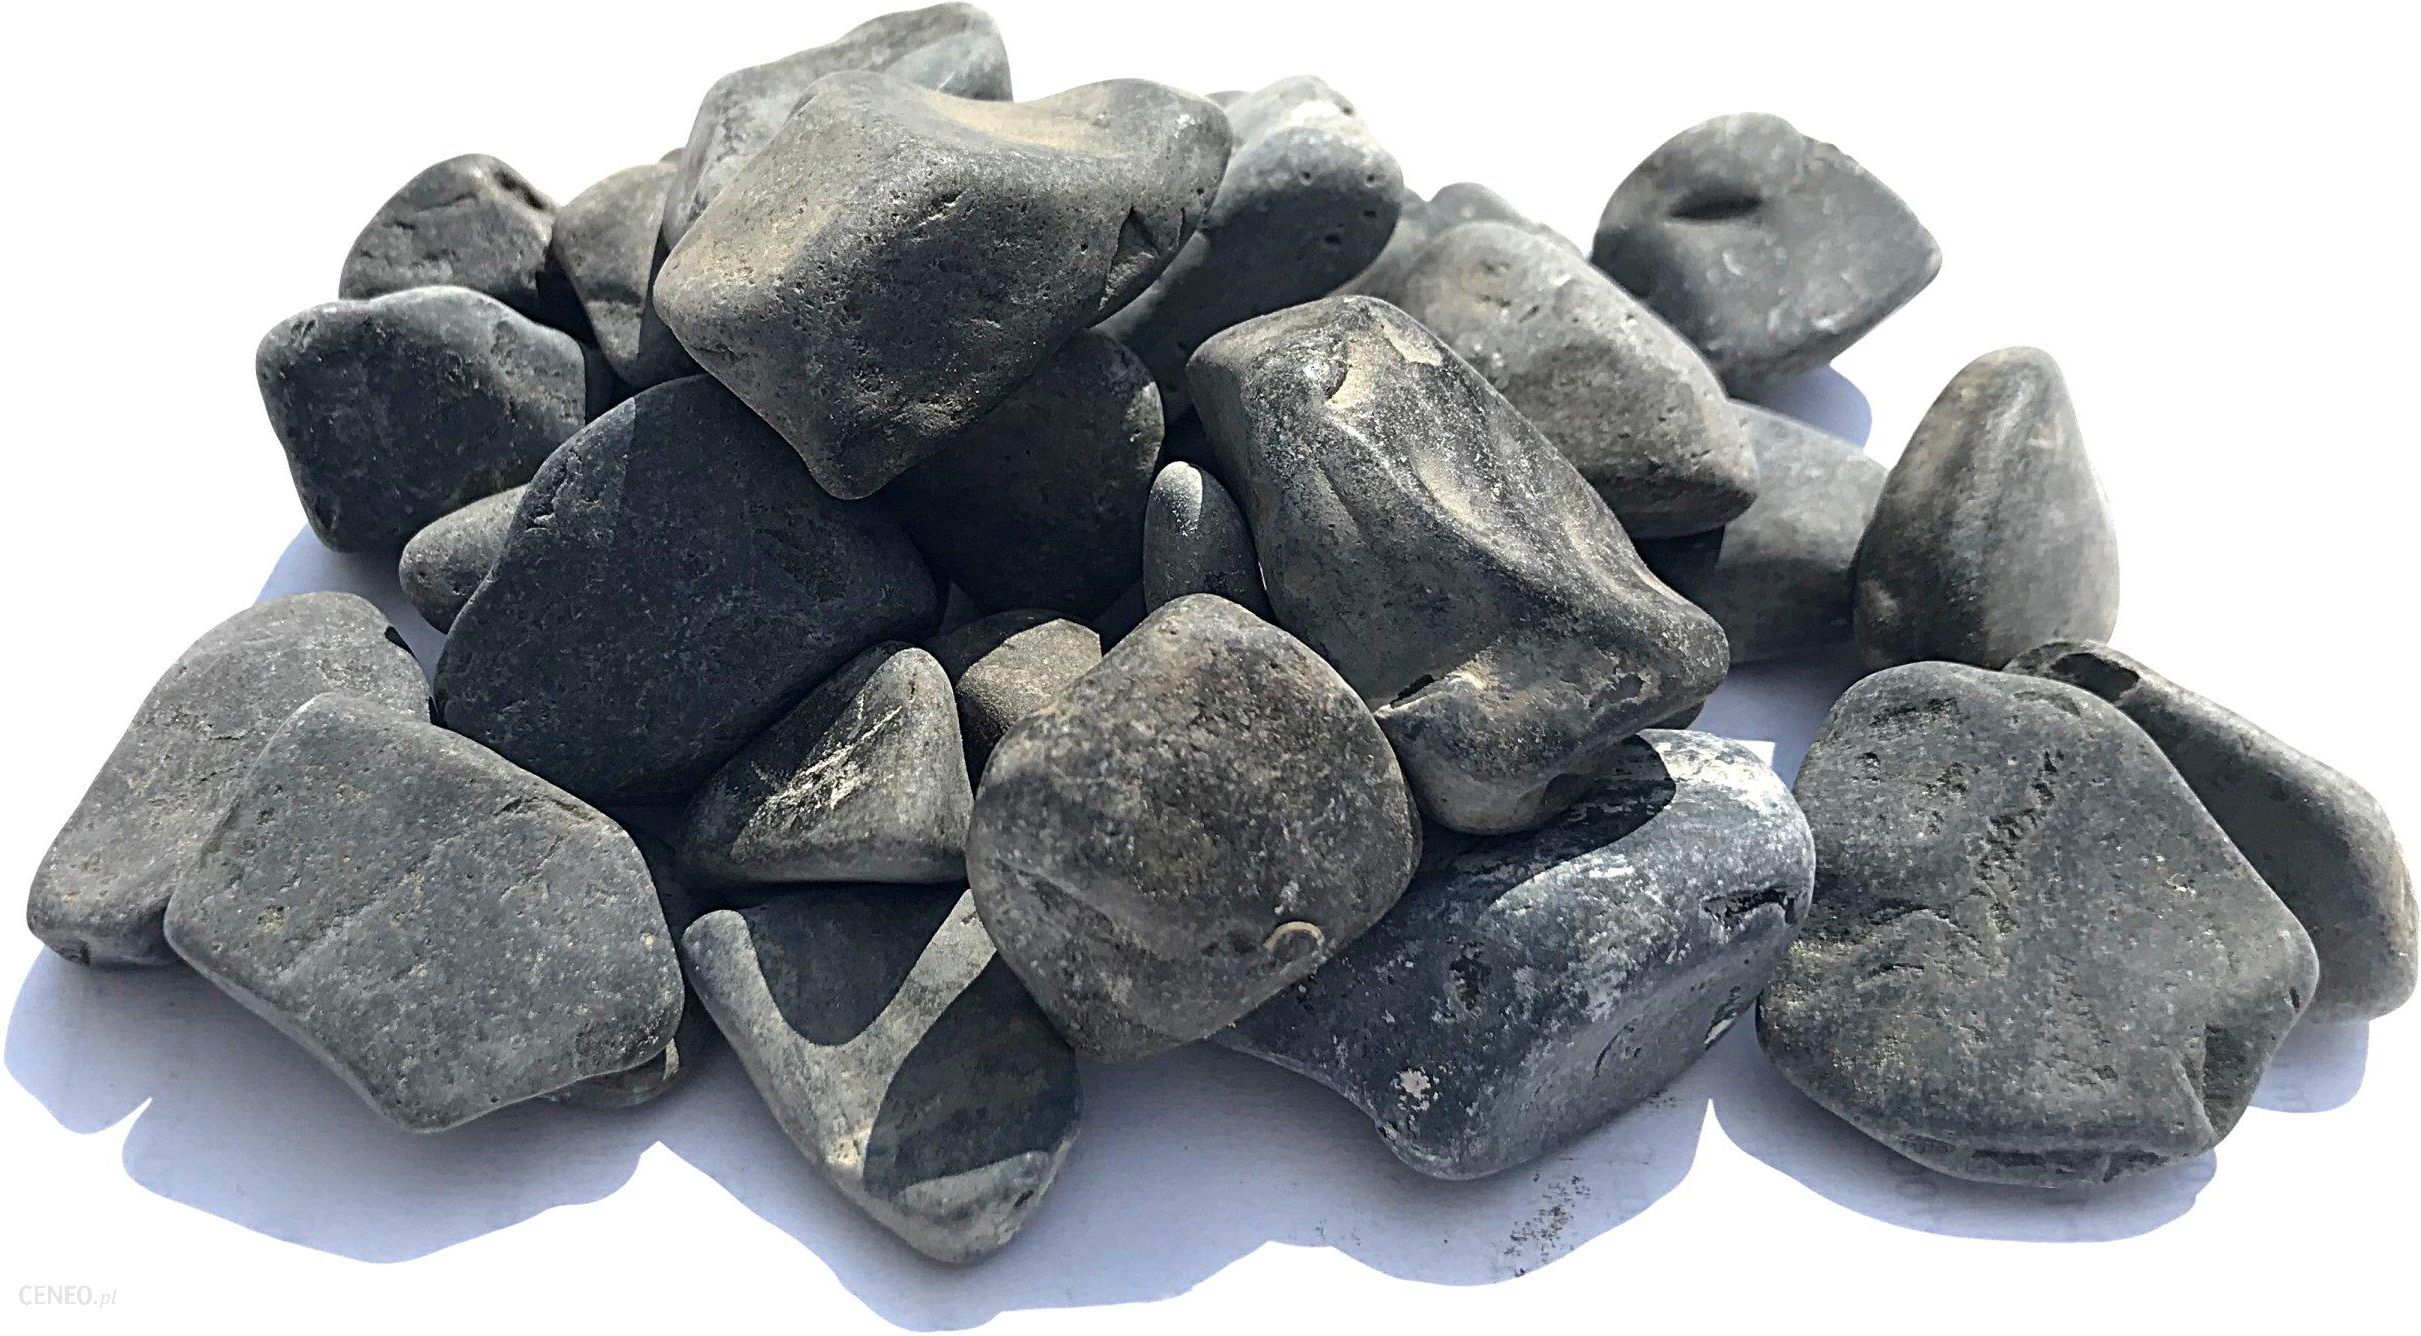  Stone Garden Kamień Otoczak Czarny 15-25mm 20kg